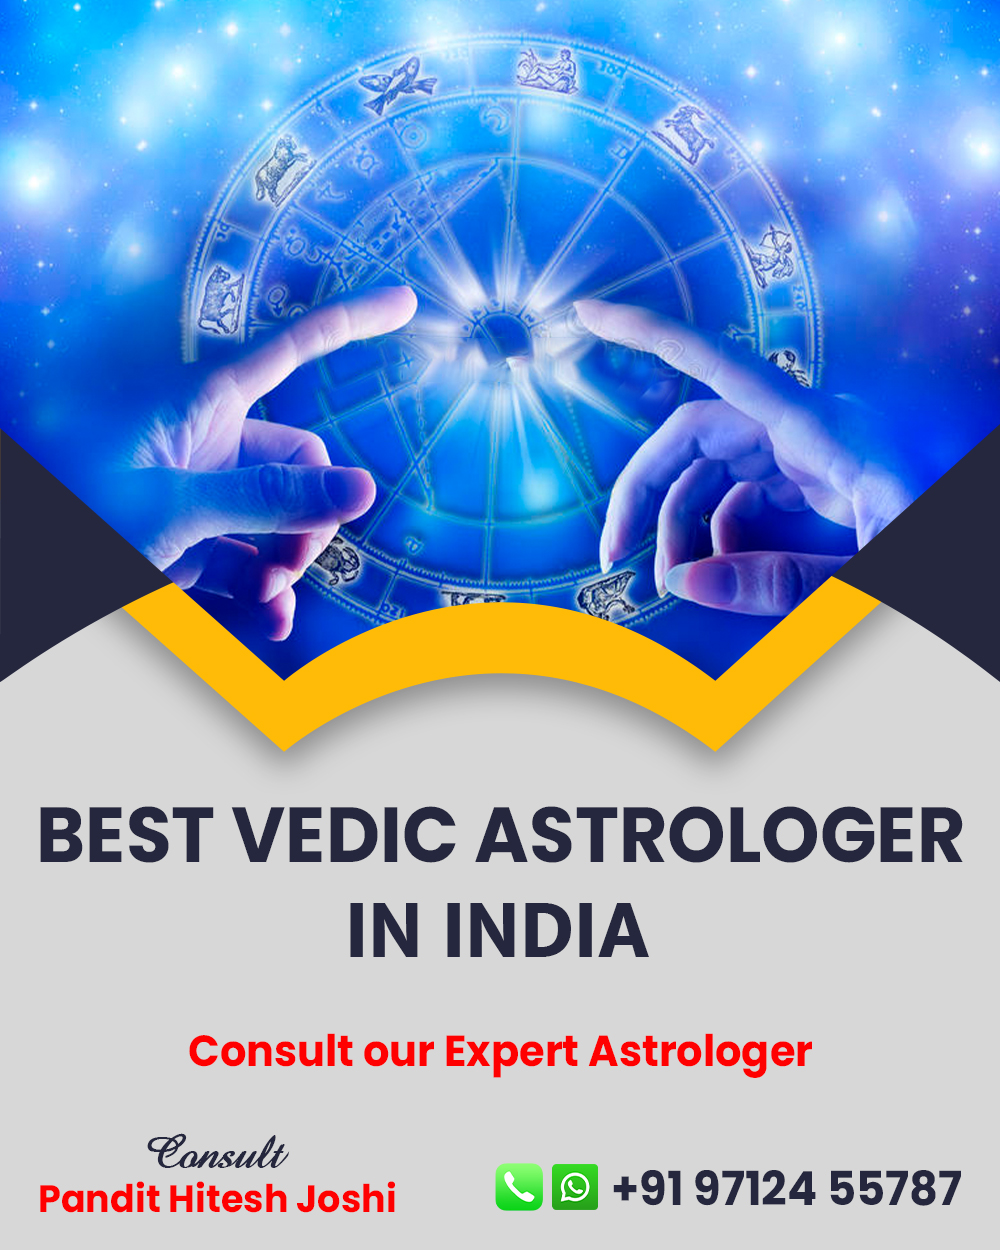 Best Astrologer in Dahegam